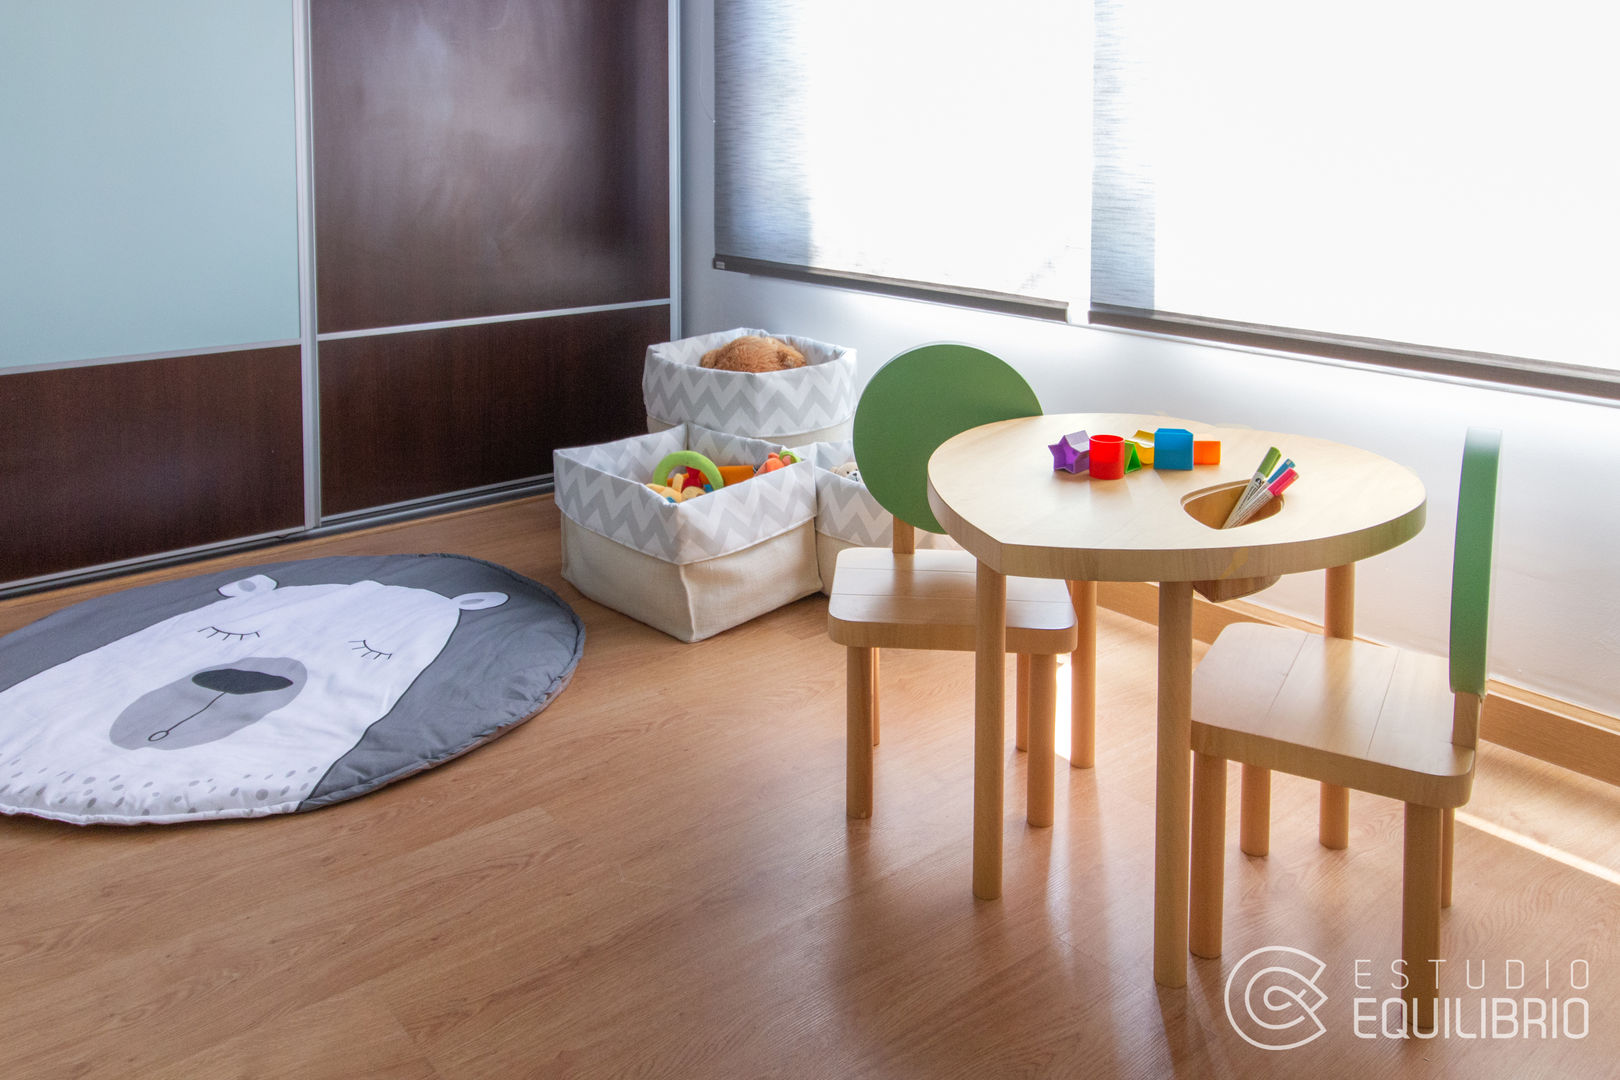 Proyecto Ardoino II Estudio Equilibrio Habitaciones de niños